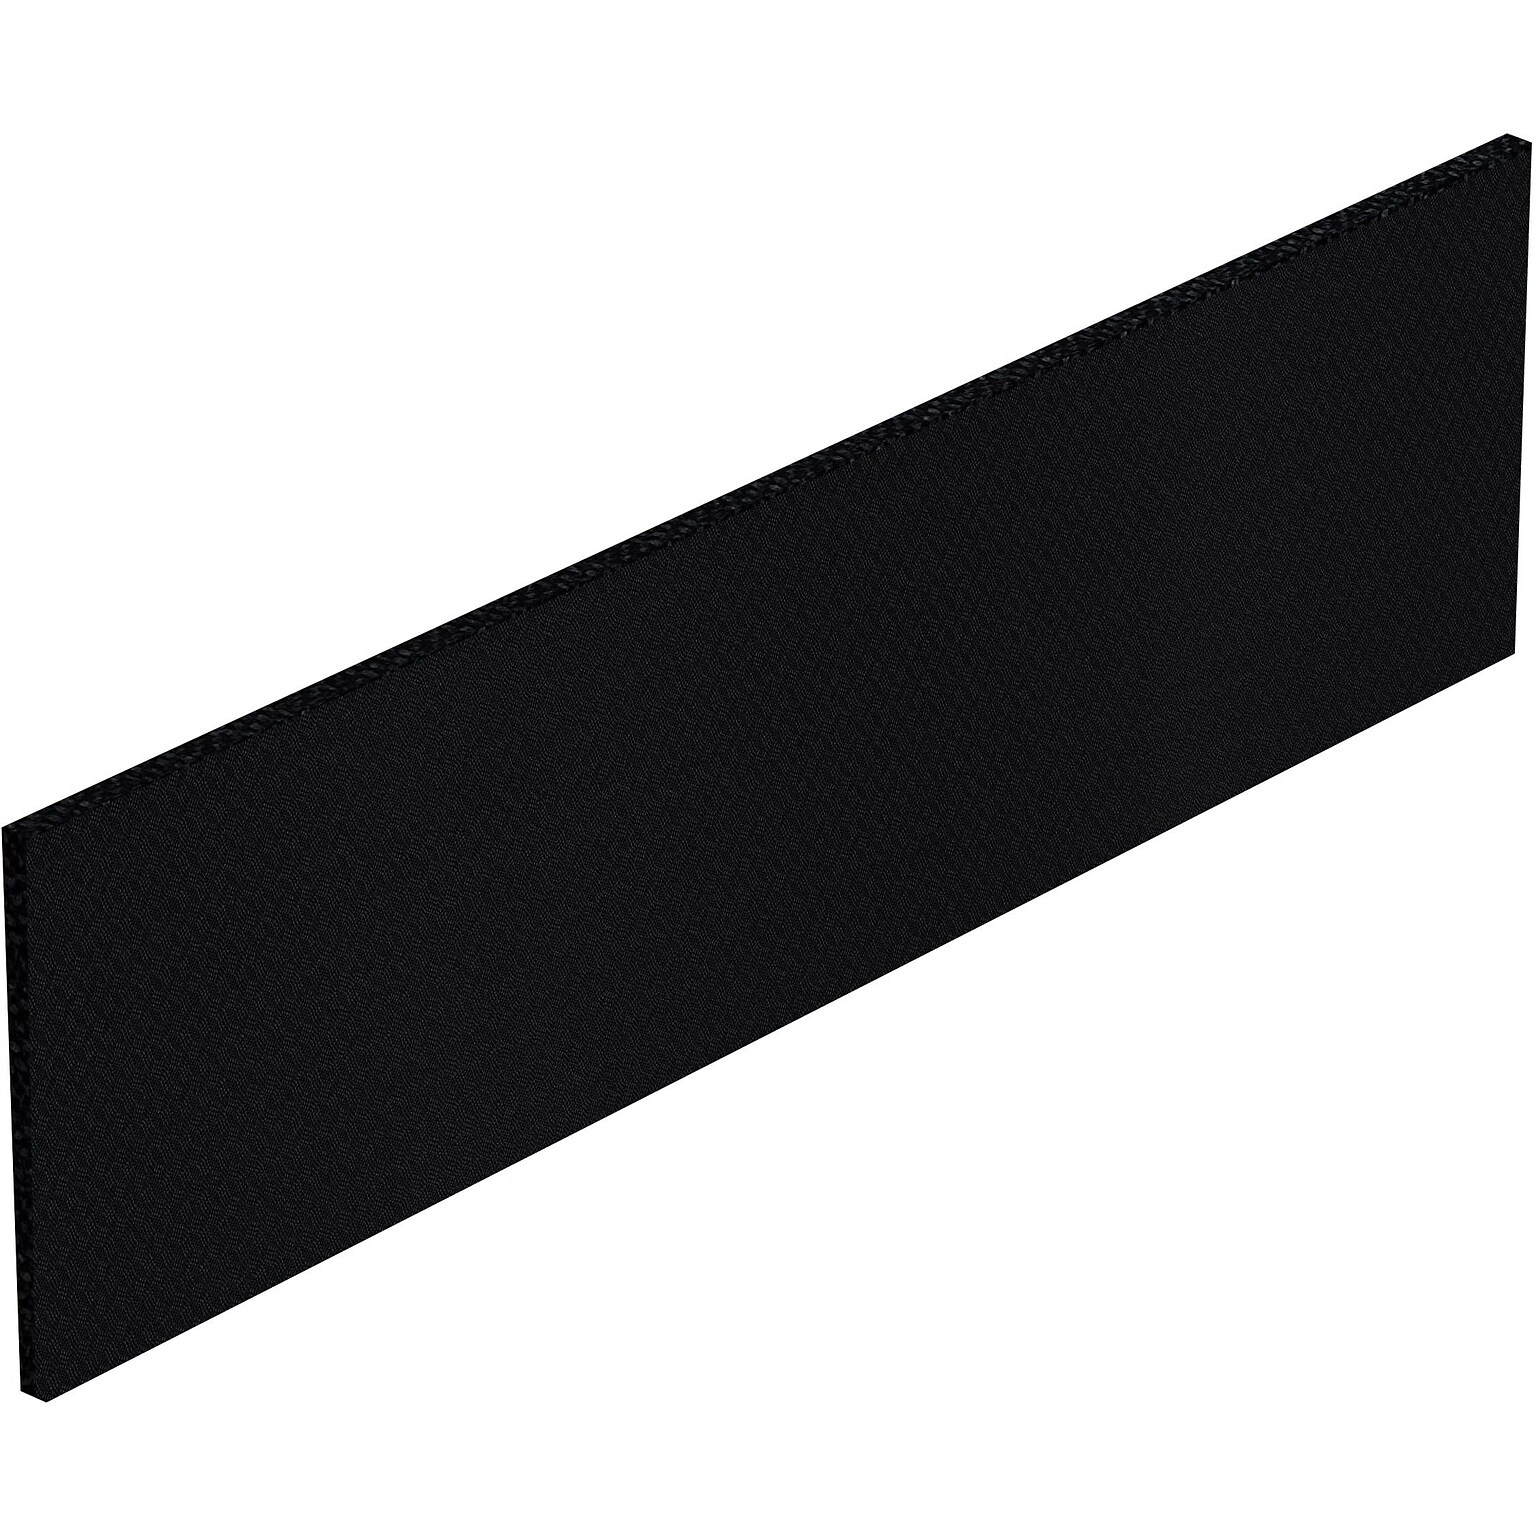 GIS Tackboard with Black Fabric, 64Wx17.25H